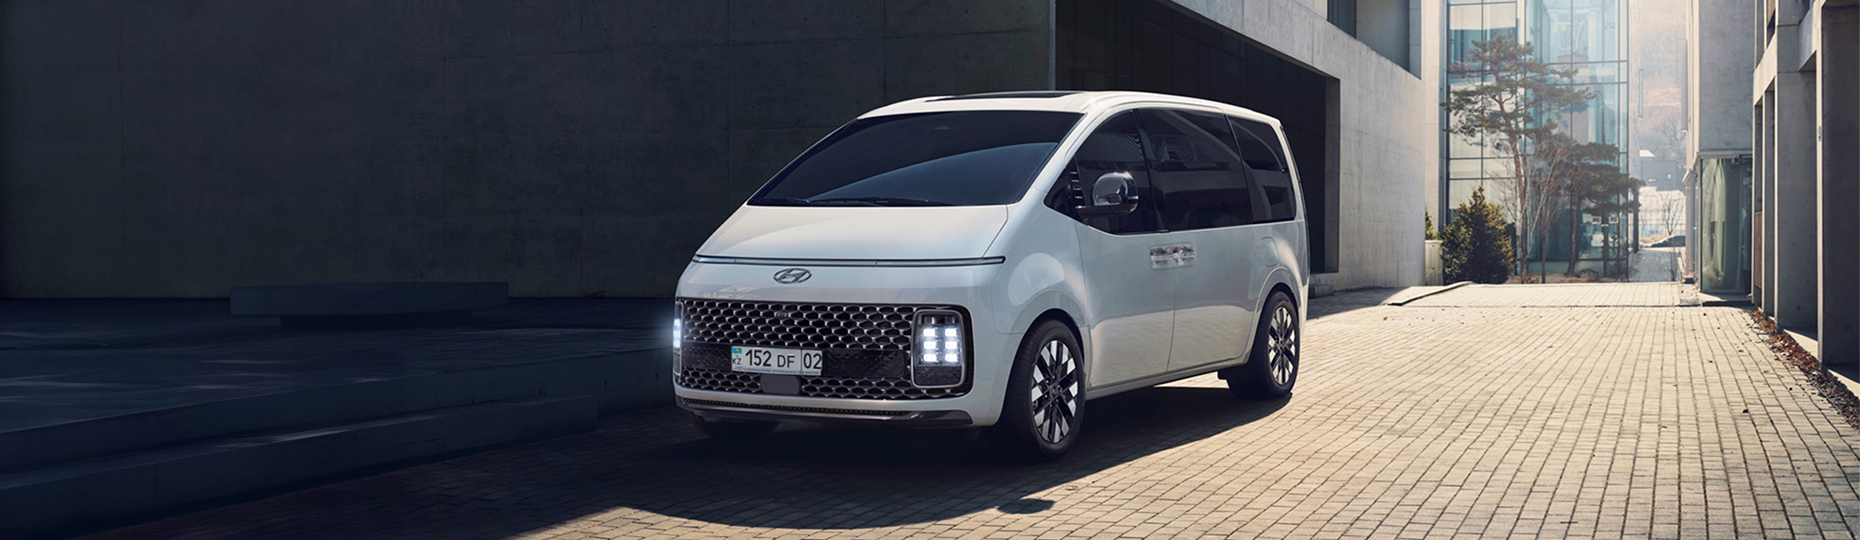 Безопасность нового Hyundai Staria | Официальный дилер в Алматы